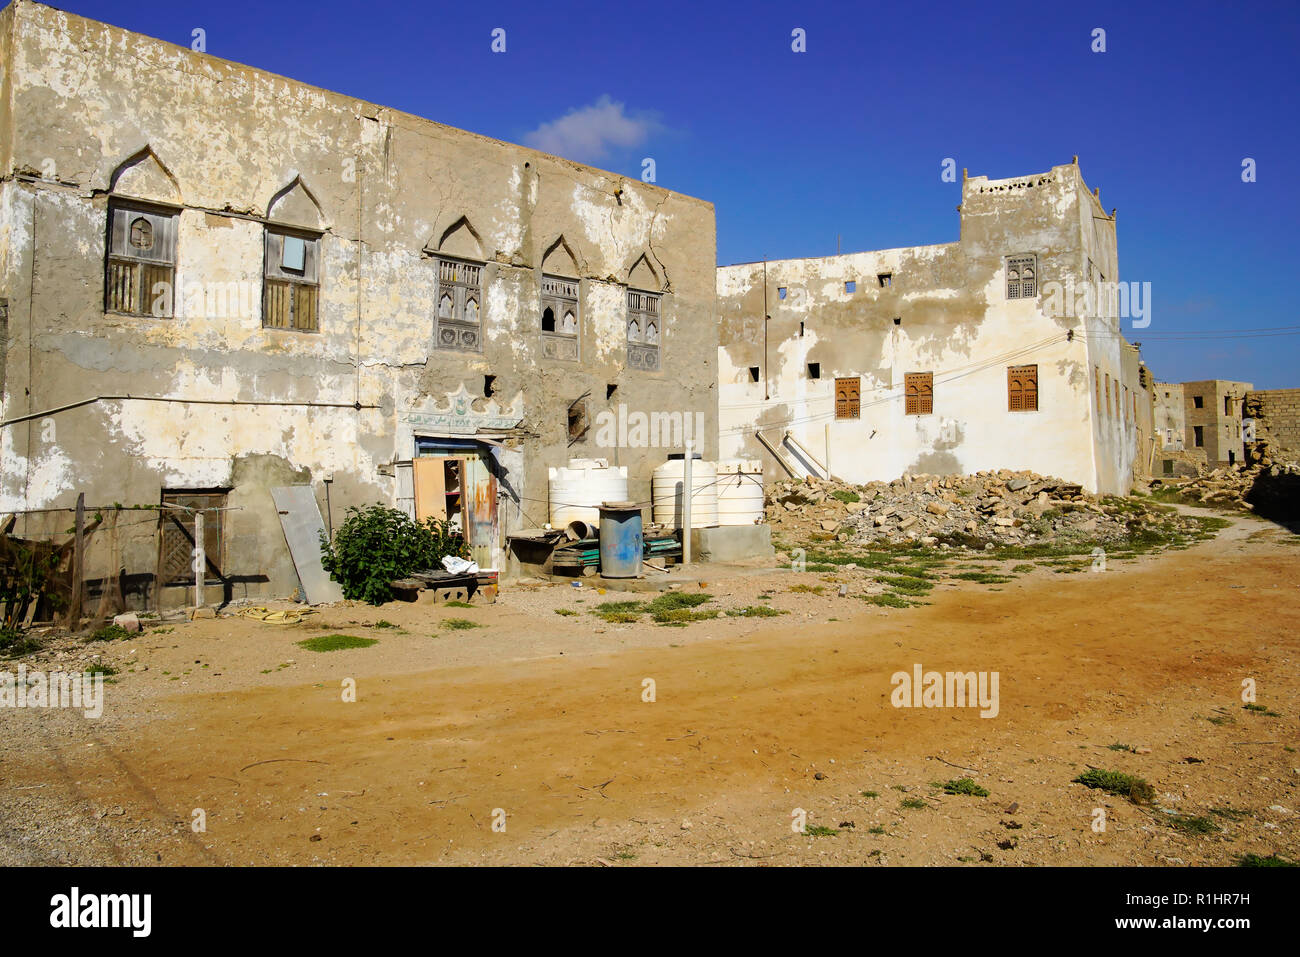 Maison traditionnelle omanaise abandonnés dans la région de Dhofar, Mirbat, Oman. Banque D'Images